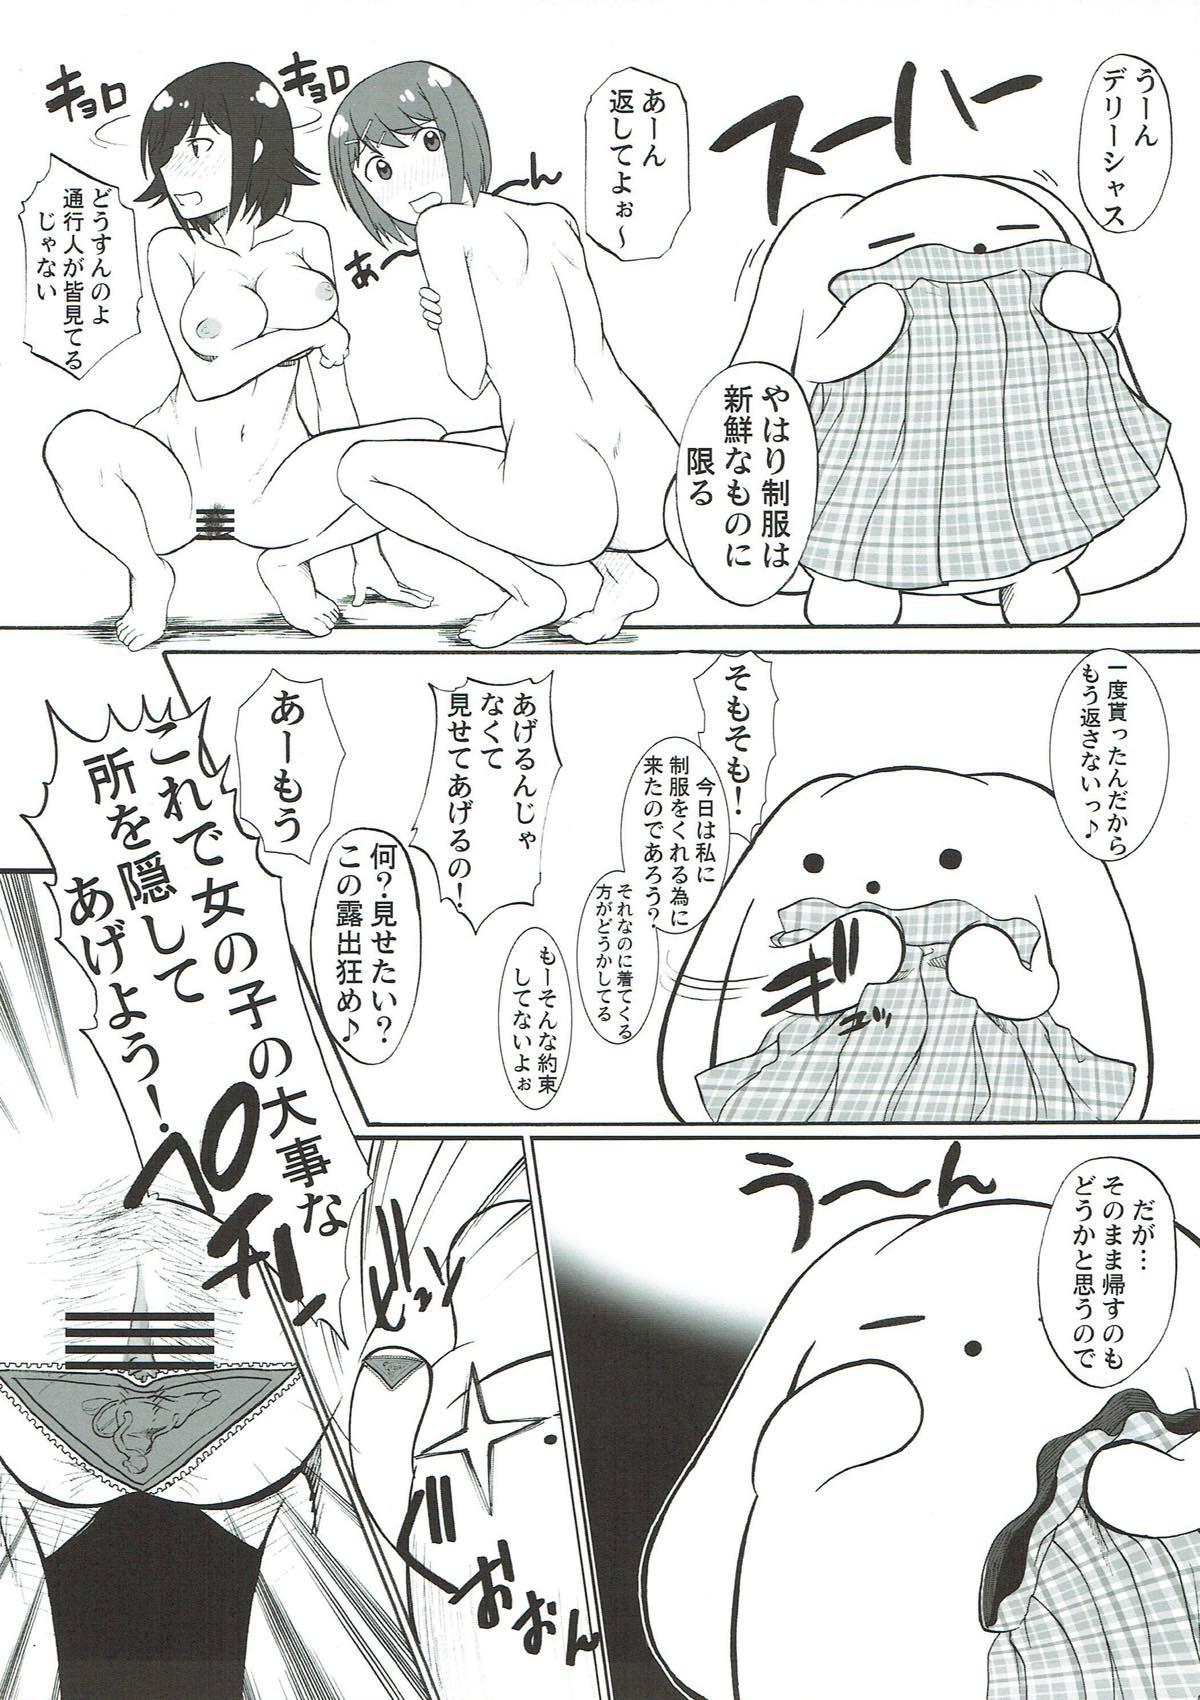 8teenxxx Toriaezu Beam de! - Wooser no sonohigurashi Gay Hunks - Page 8